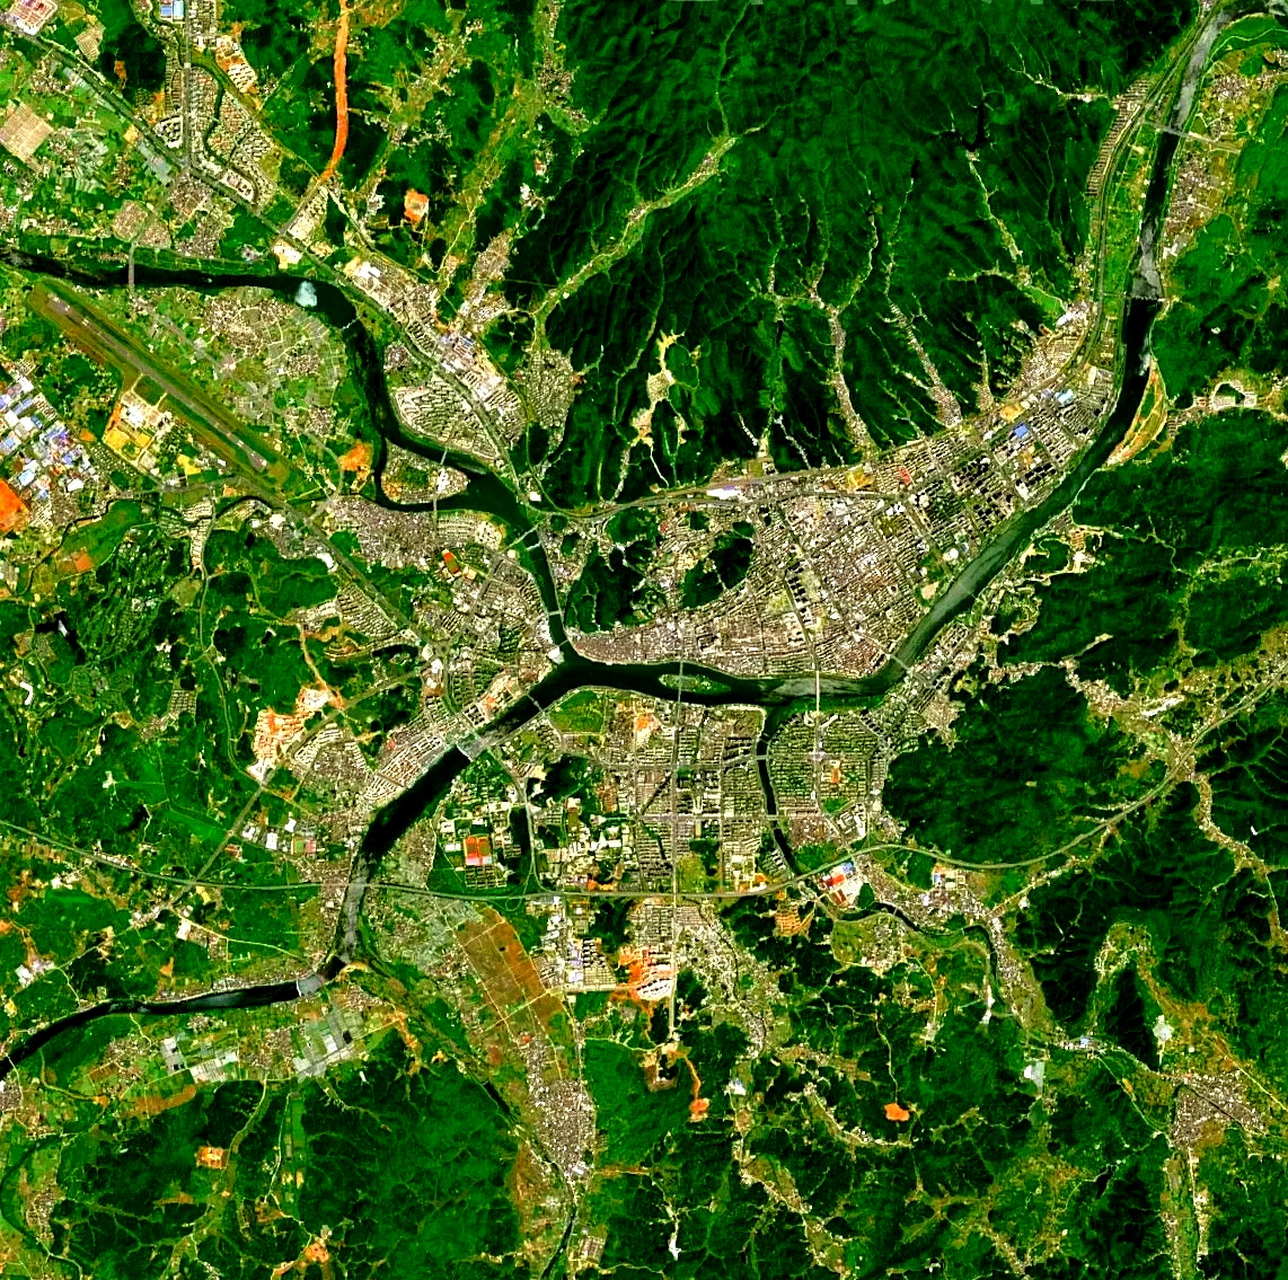 黄山市三维地图图片